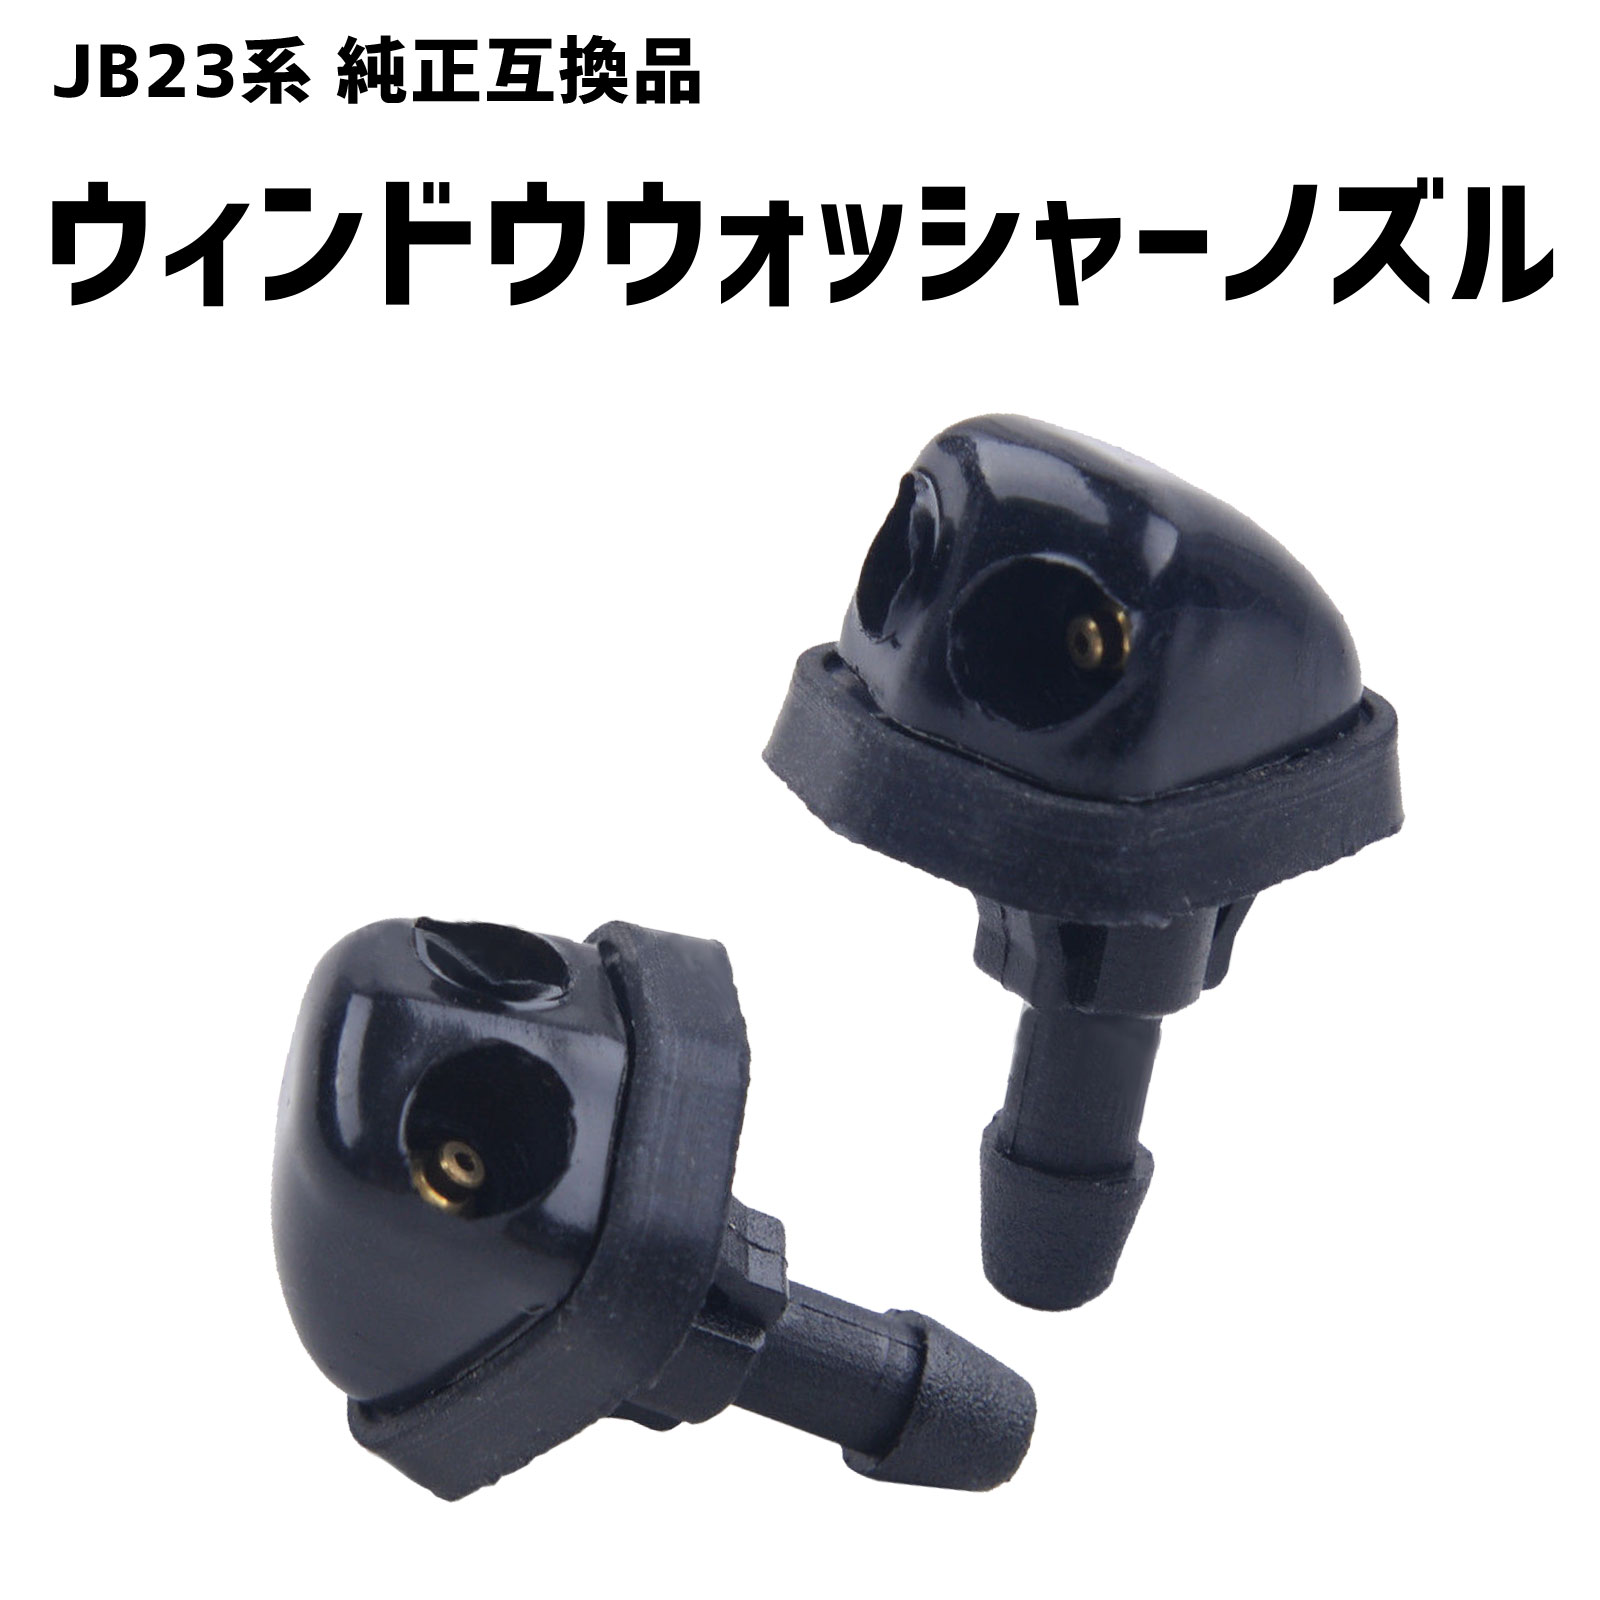 ウォッシャーノズル JB23 ジムニー 2穴 2個セット SUZUKI 互換品 SN-228-N1 メンテナンス用品 